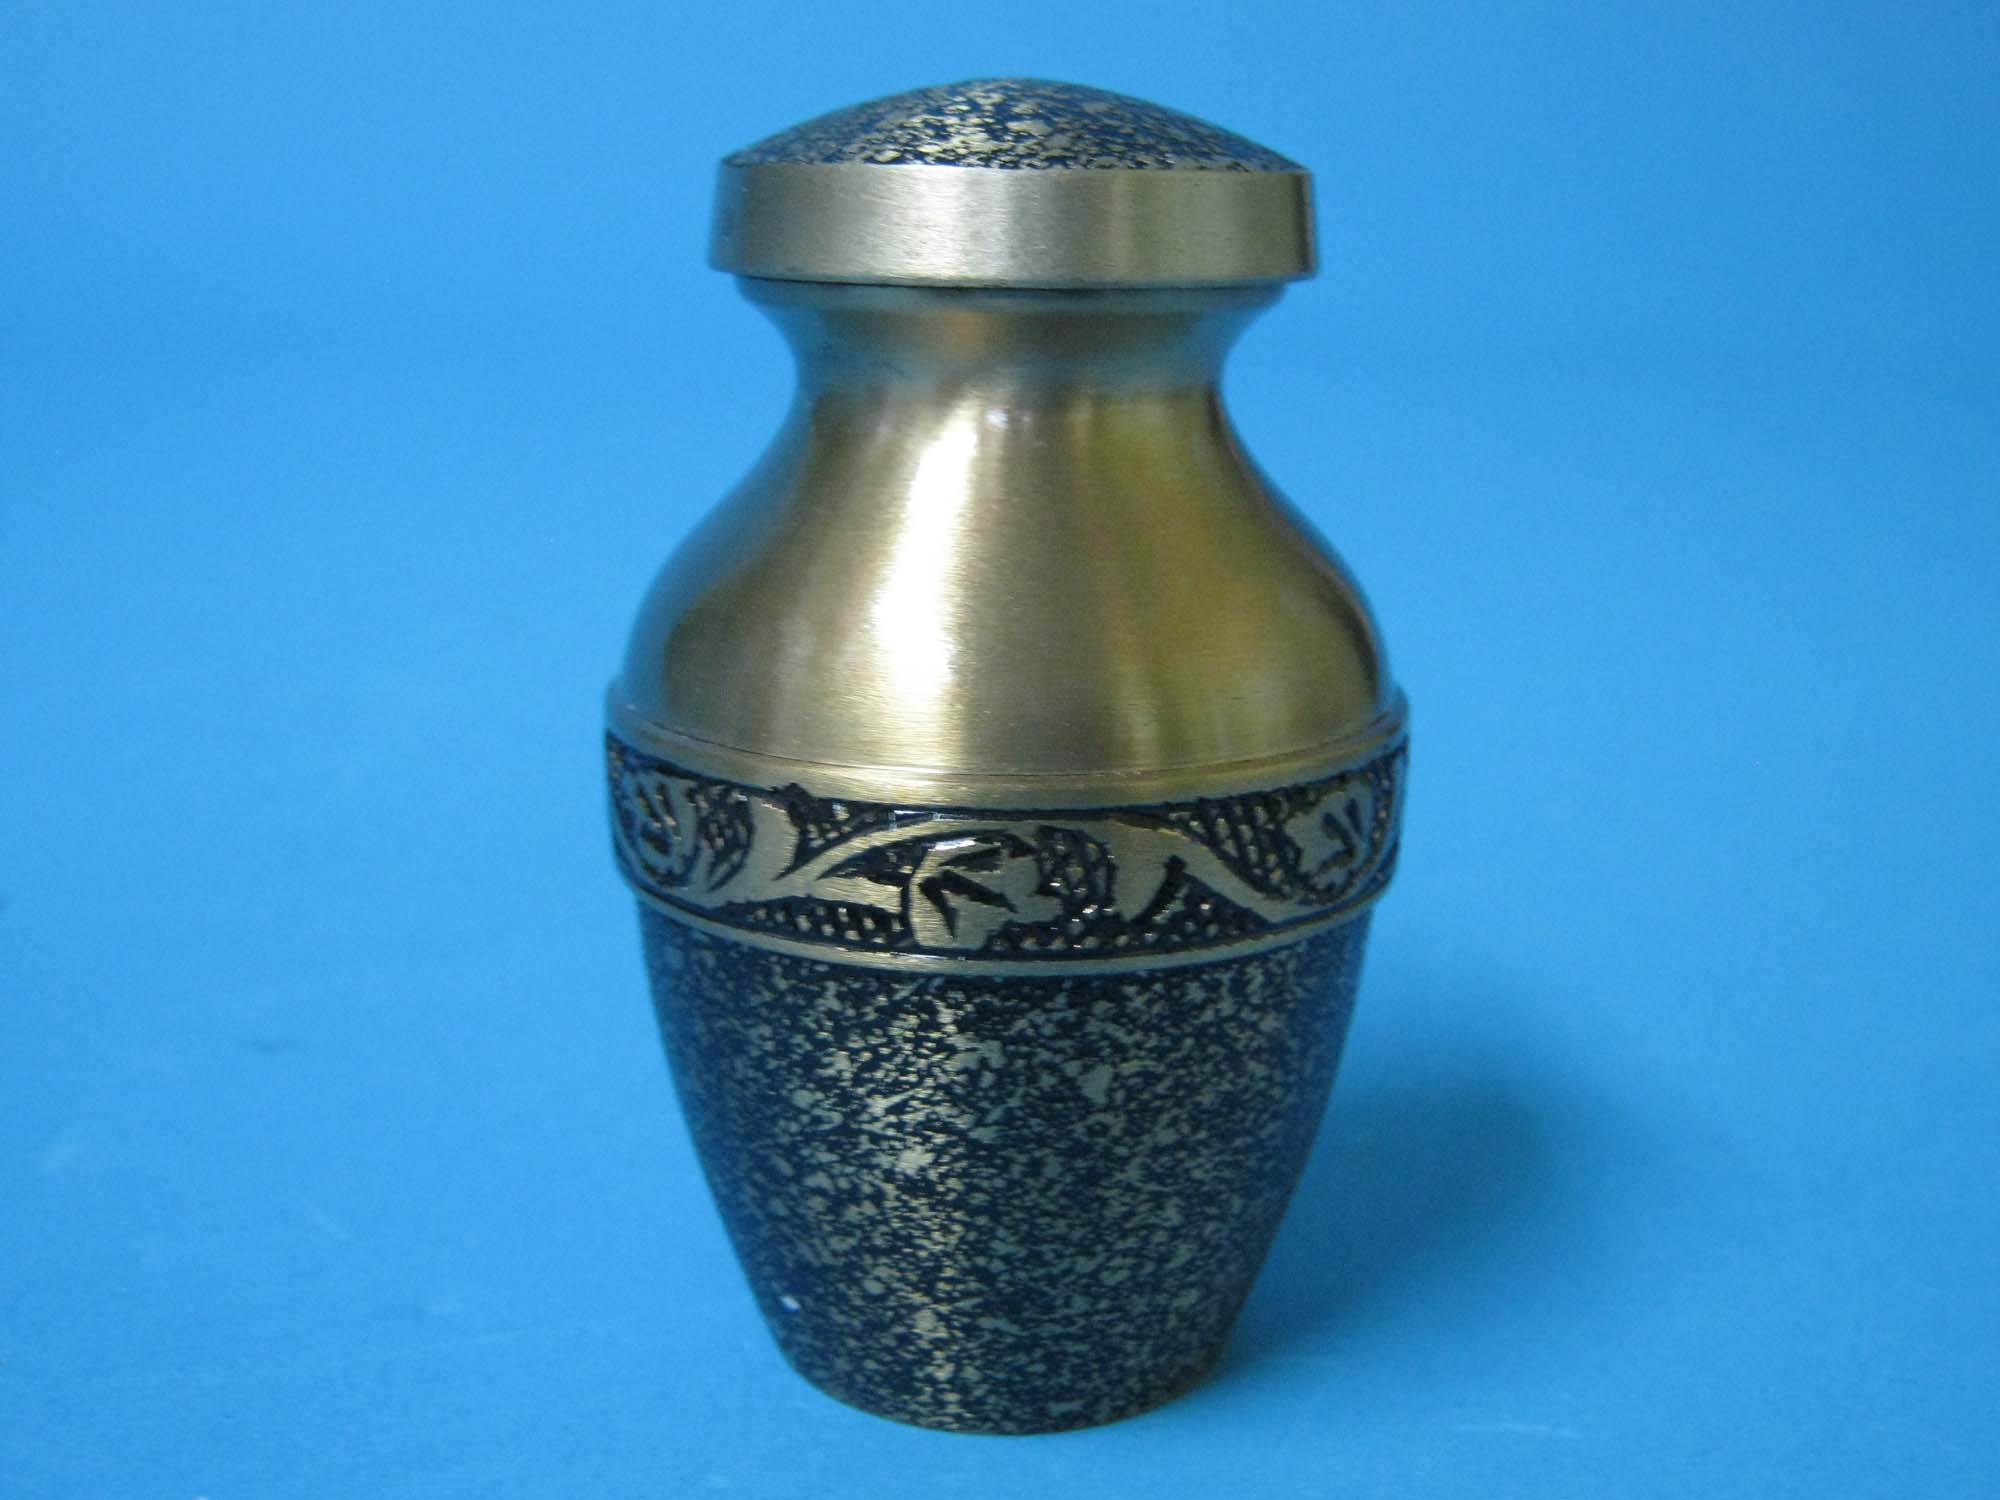 Cremation Keepsake Urn In Velvet Box: Brass with Antiqued Finish - 1136-30-510 (8UW10)